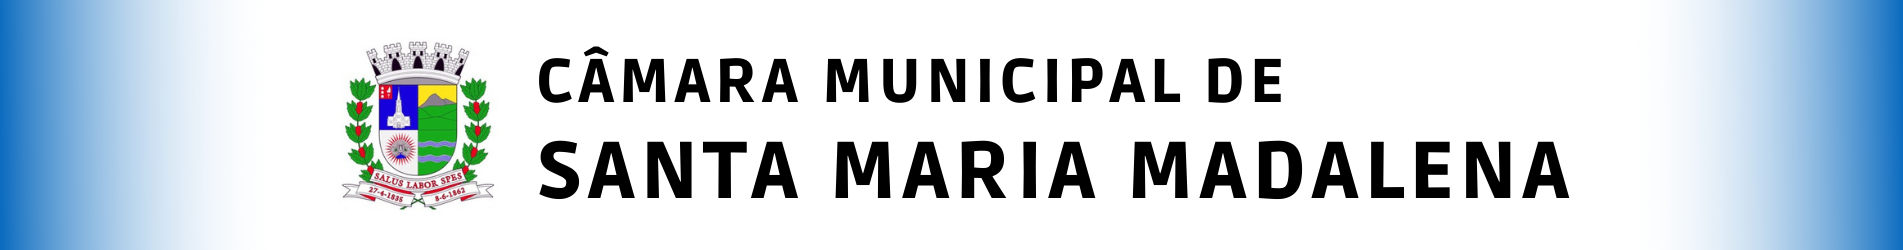 cropped-CAMARA-MUNICIPAL-DE-SANTA-MARIA-MADALENA.png